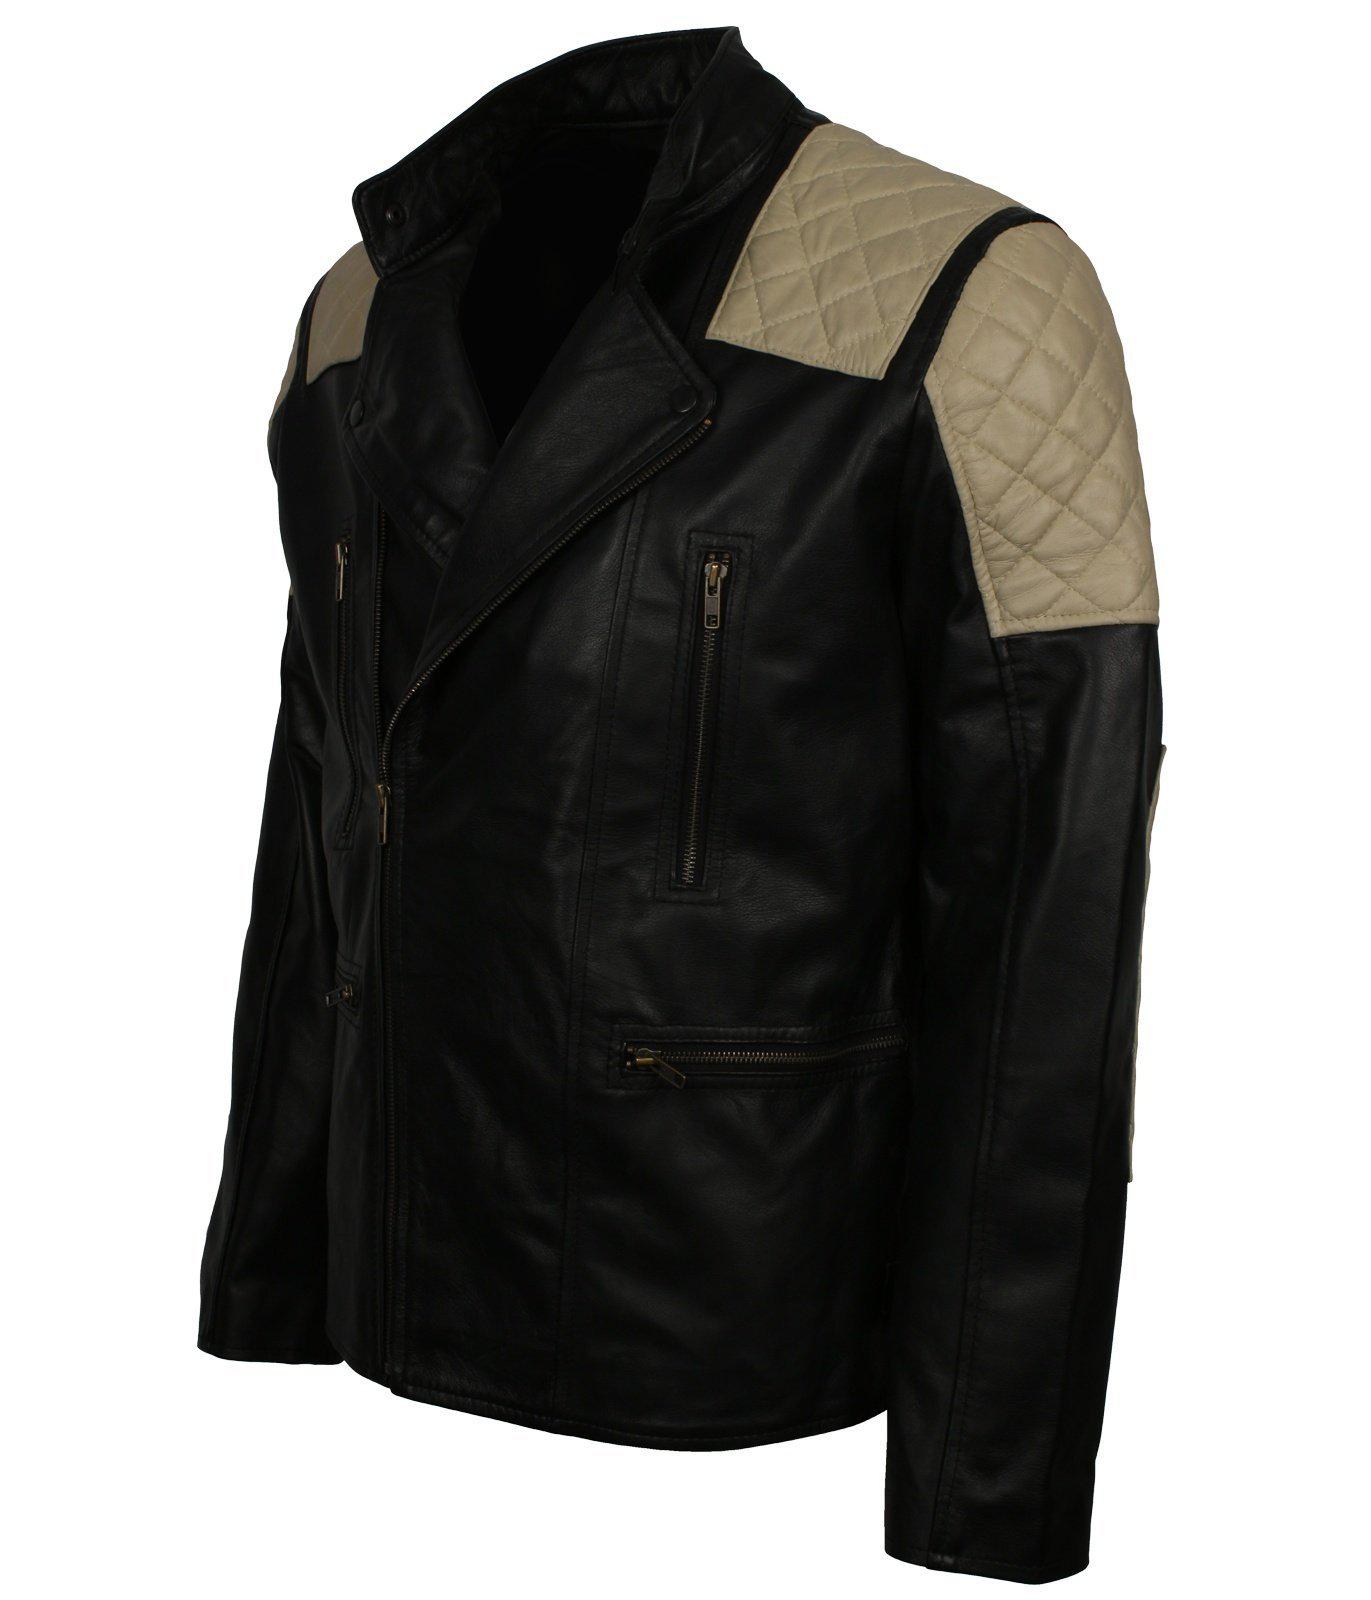 Vintage Black Leather Biker Quilted Jacket